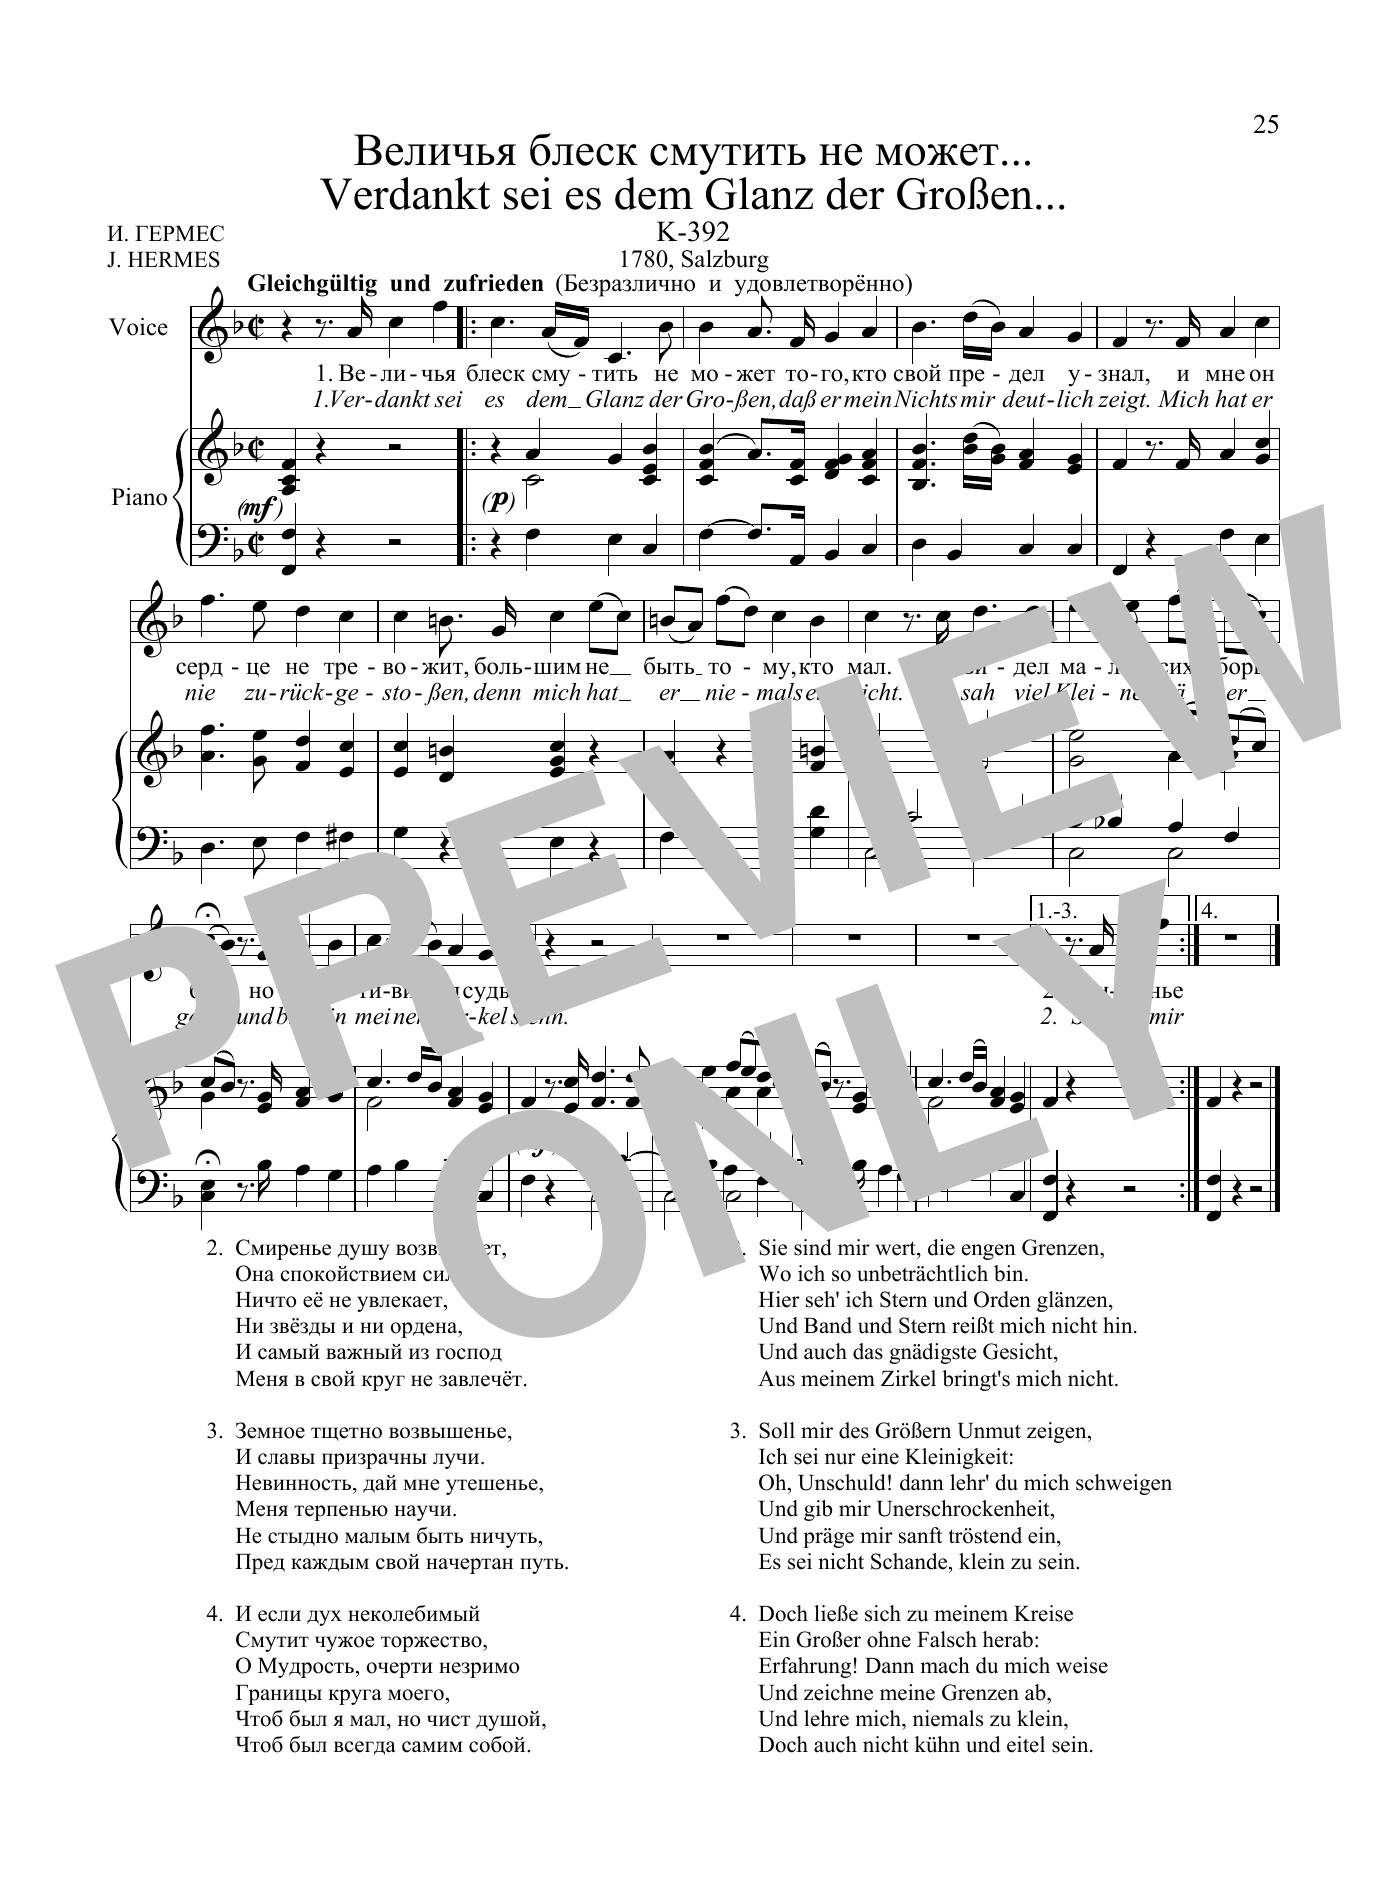 Download Wolfgang Amadeus Mozart 36 Songs Vol. 1: Verdankt sei es dem Gl Sheet Music